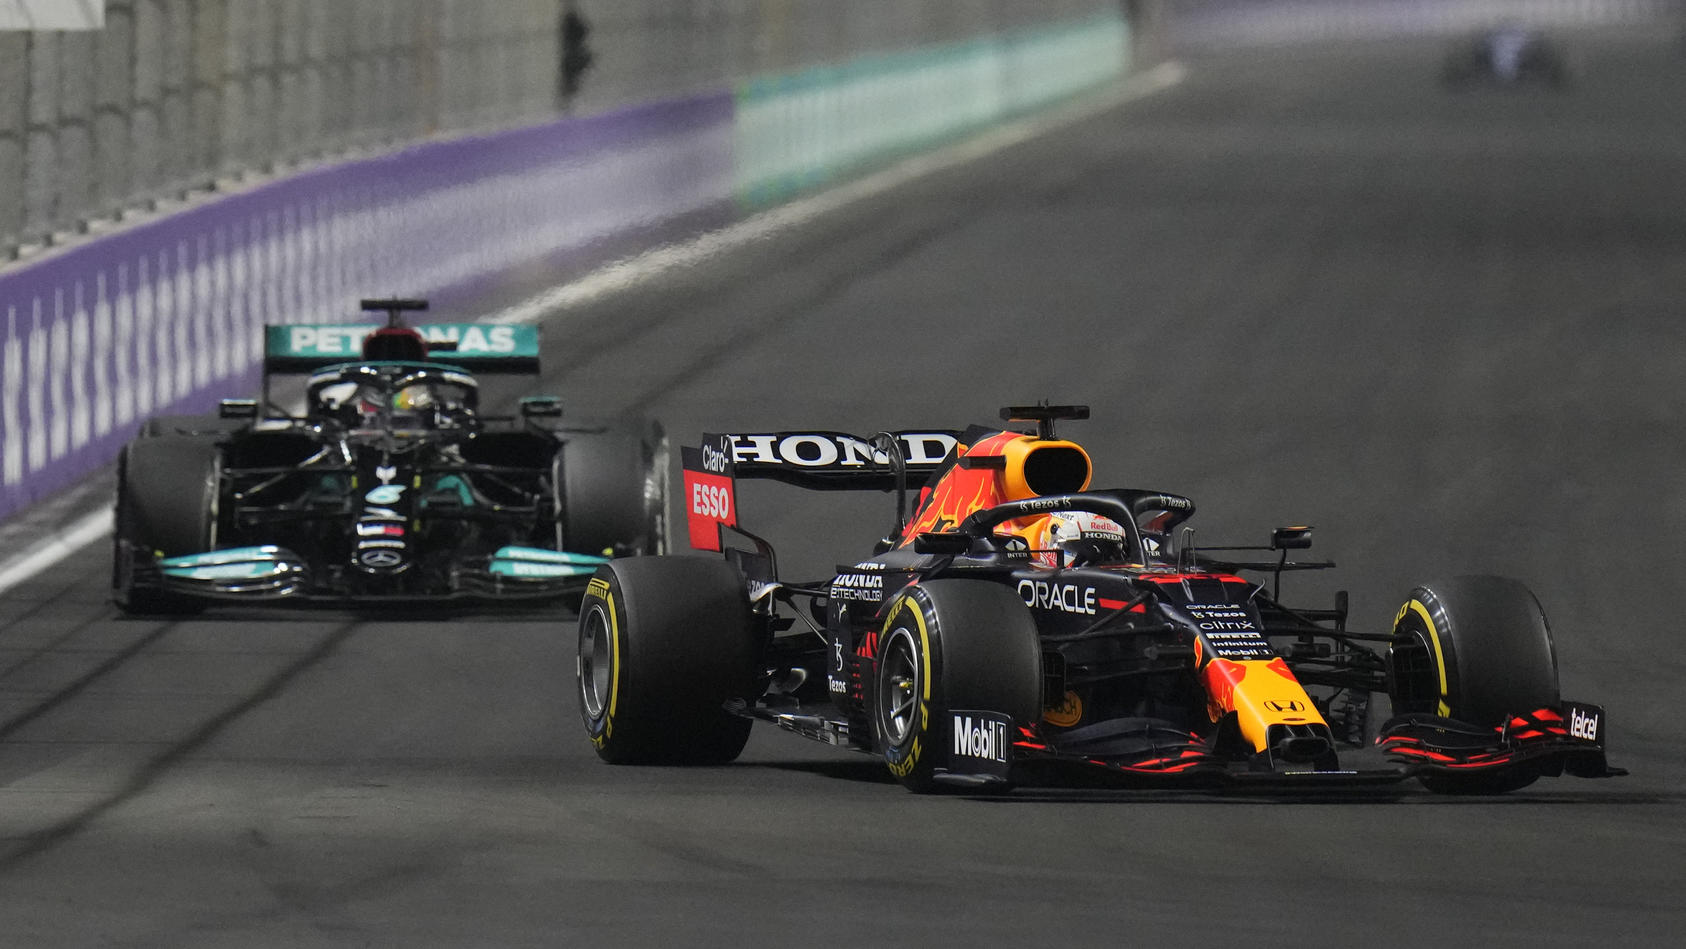 Formel 1 Grand Prix von Abu Dhabi live im TV oder im Live Stream sehen